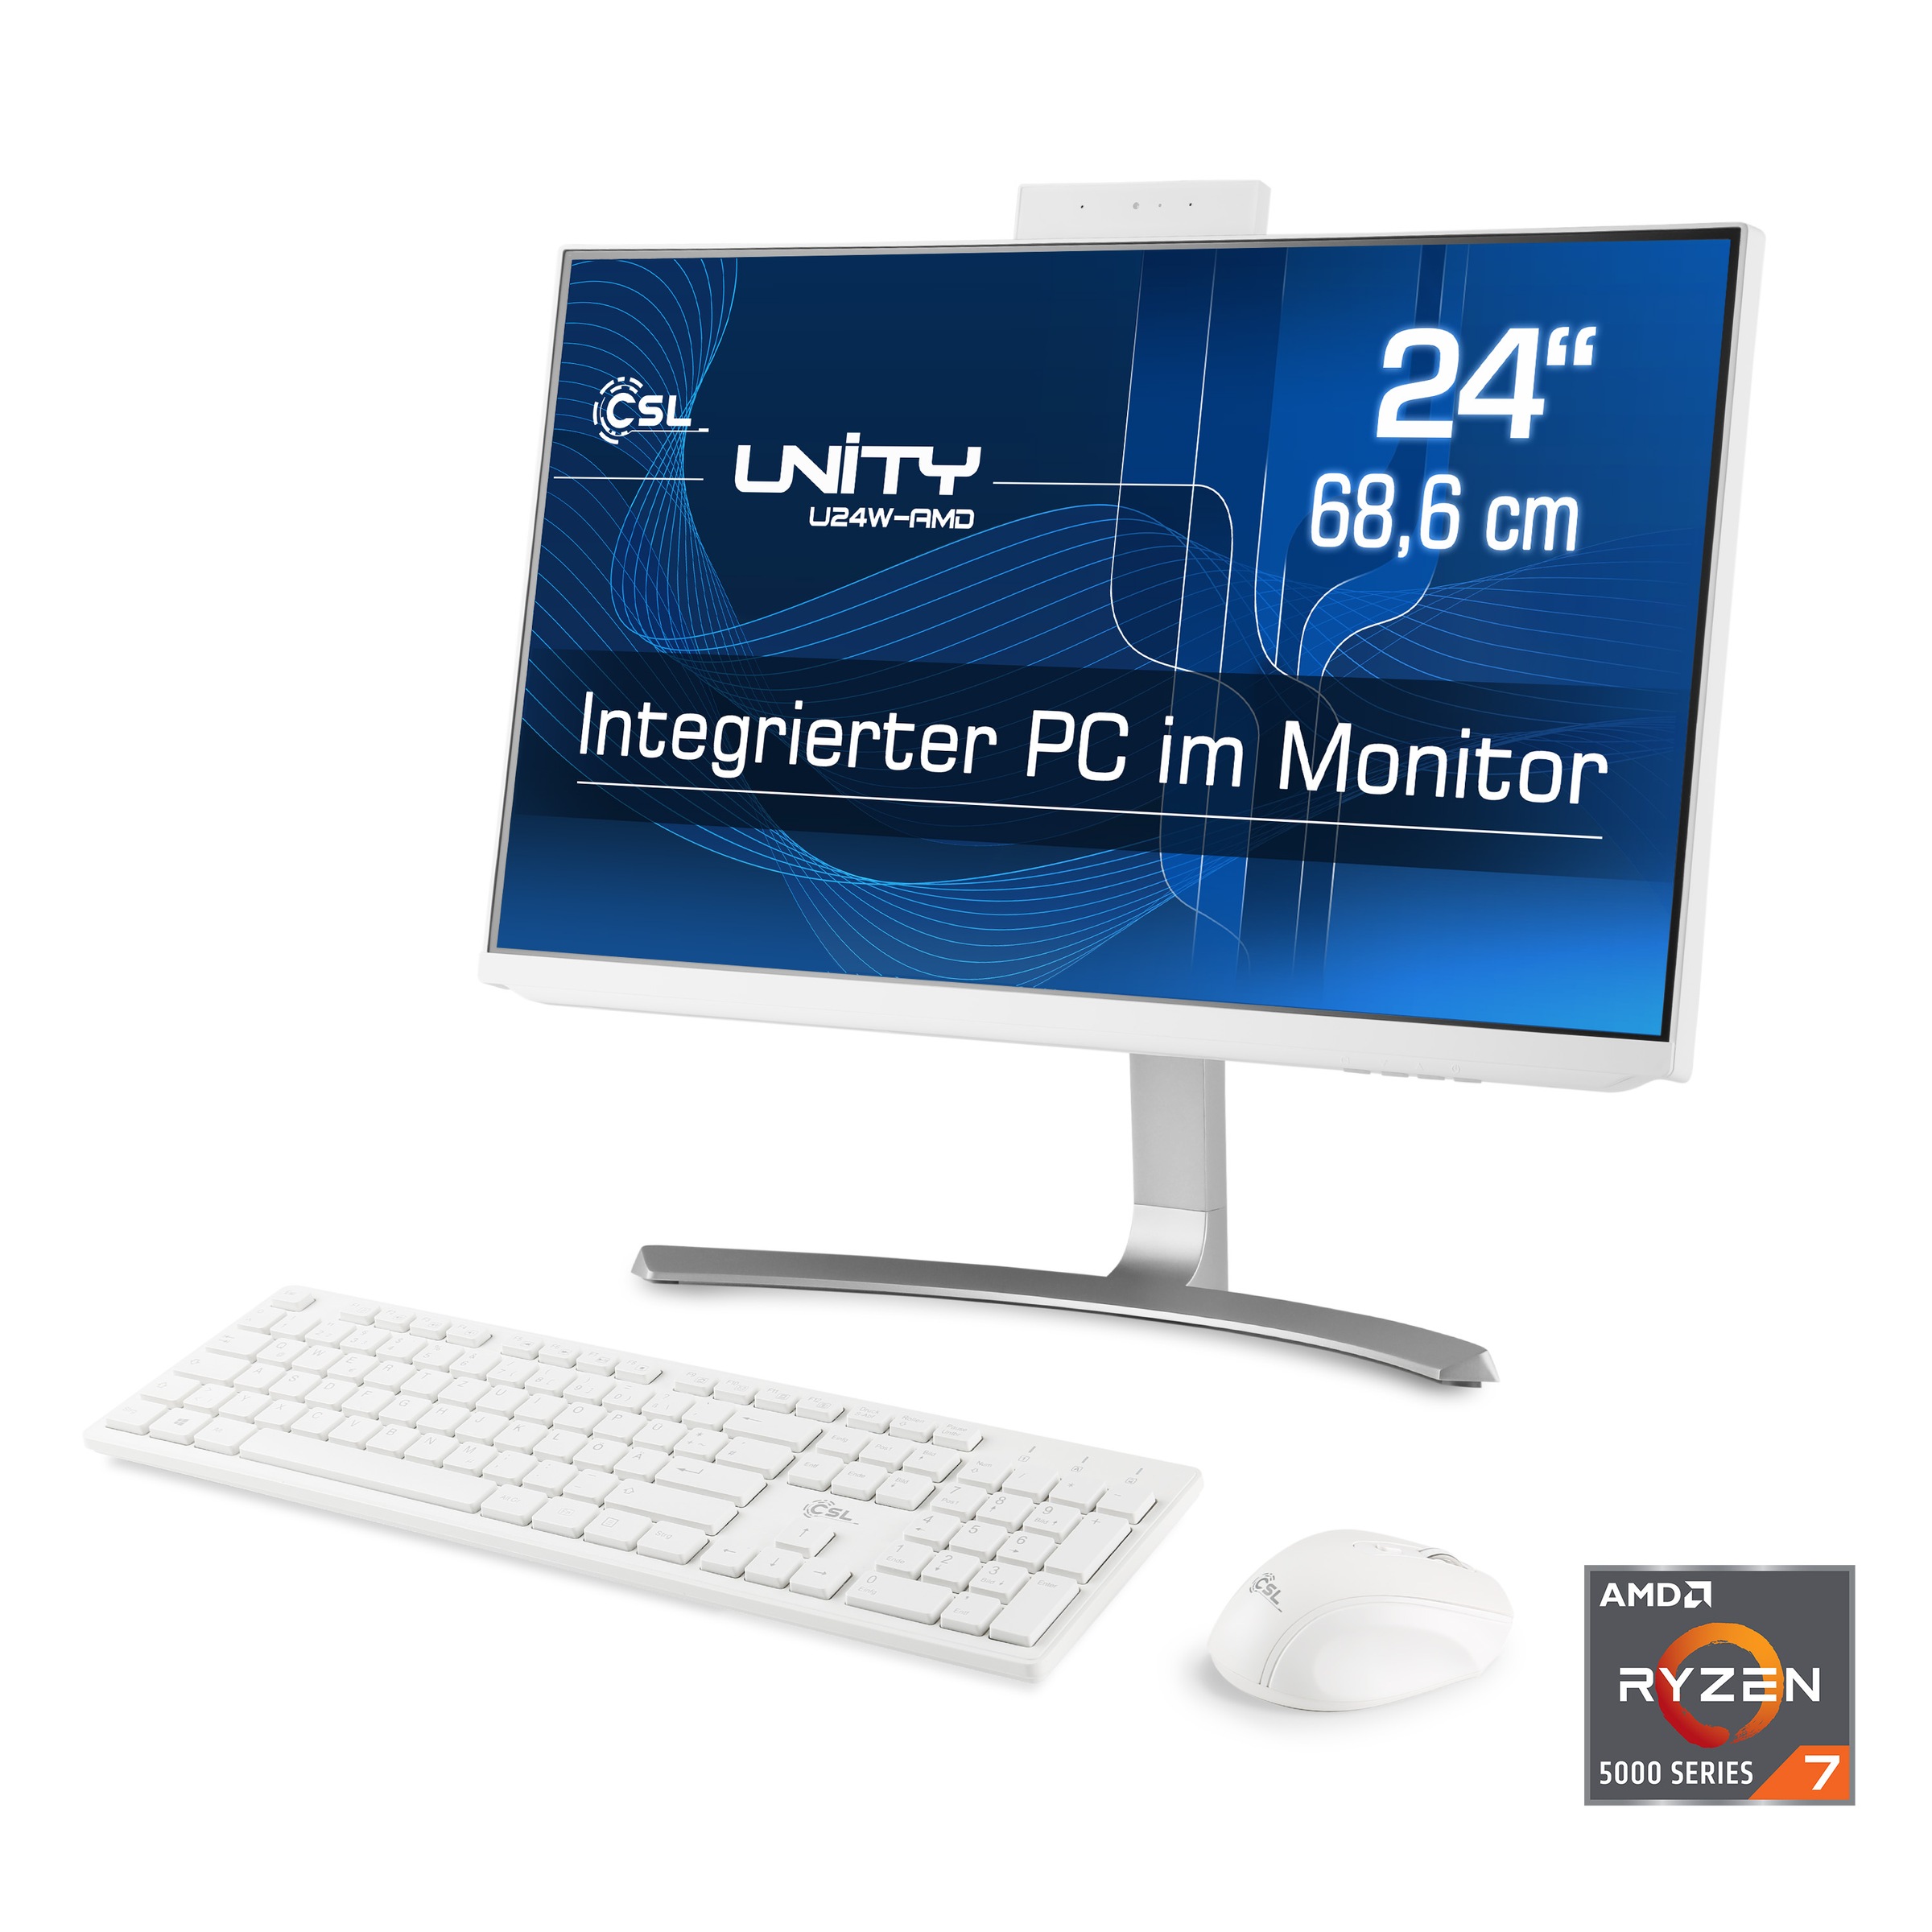 CSL All-in-One PC »Unity U24-AMD«